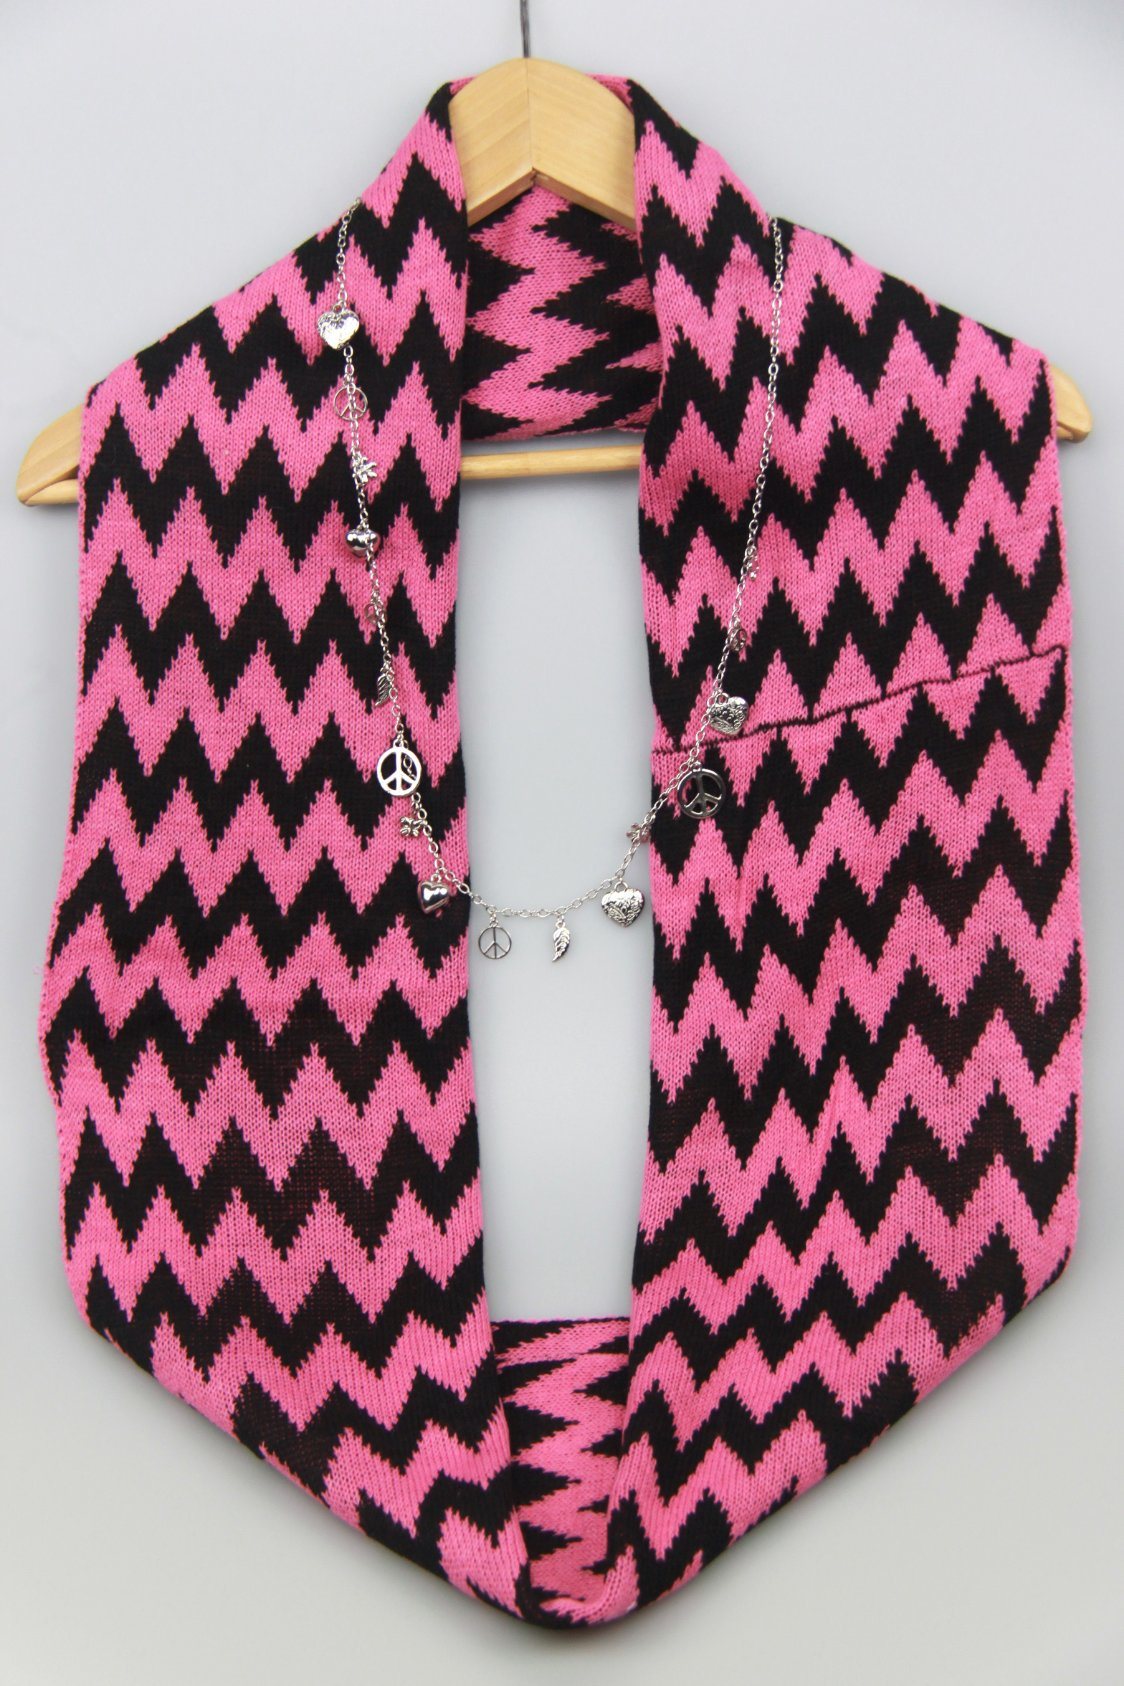 Knitted Acrylic Neck Warmer Scarf Lady Warm Shawl Fashion Accessory Supplier